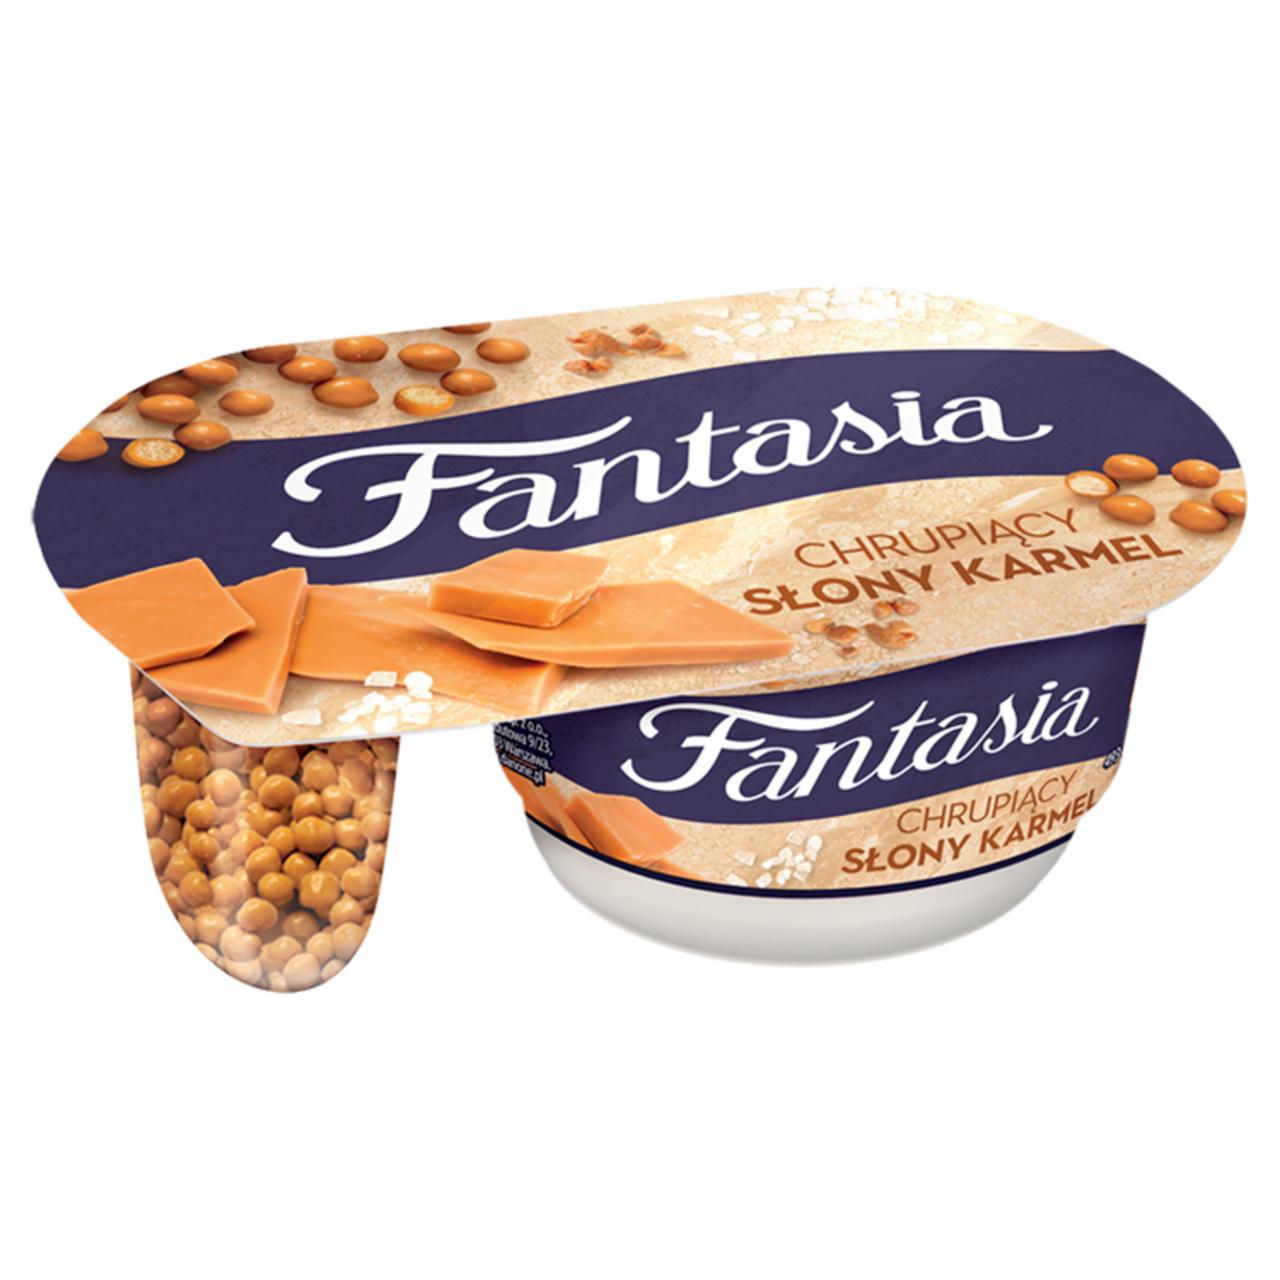 Zdjęcia - Fantasia Jogurt kremowy chrupiący słony karmel 99 g